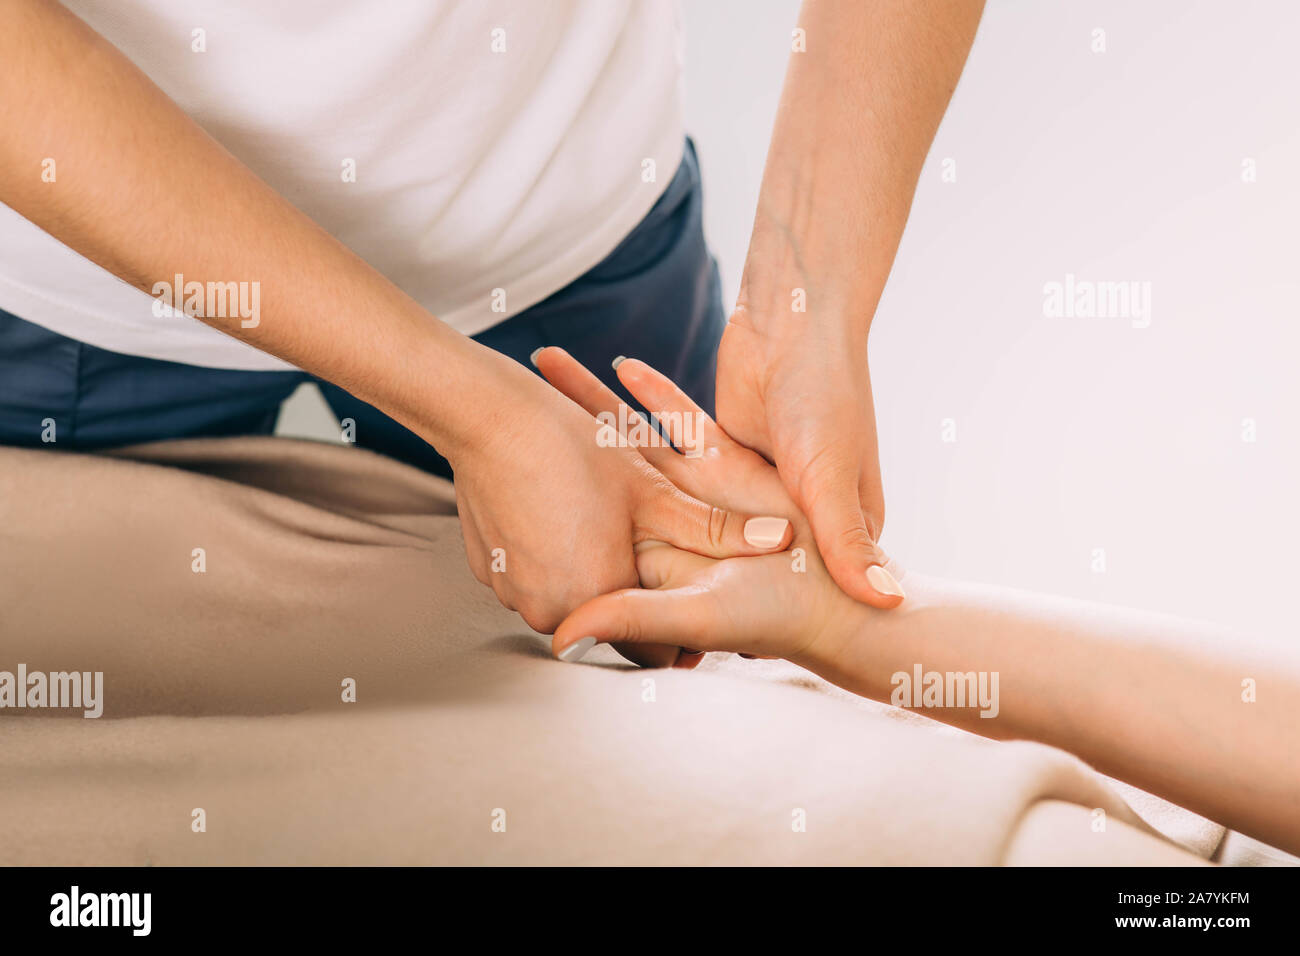 Weibliche Hand abgeschnitten, während Handmassage. Frau erhält eine Hand Massage von einer professionellen Massage therapist Stockfoto